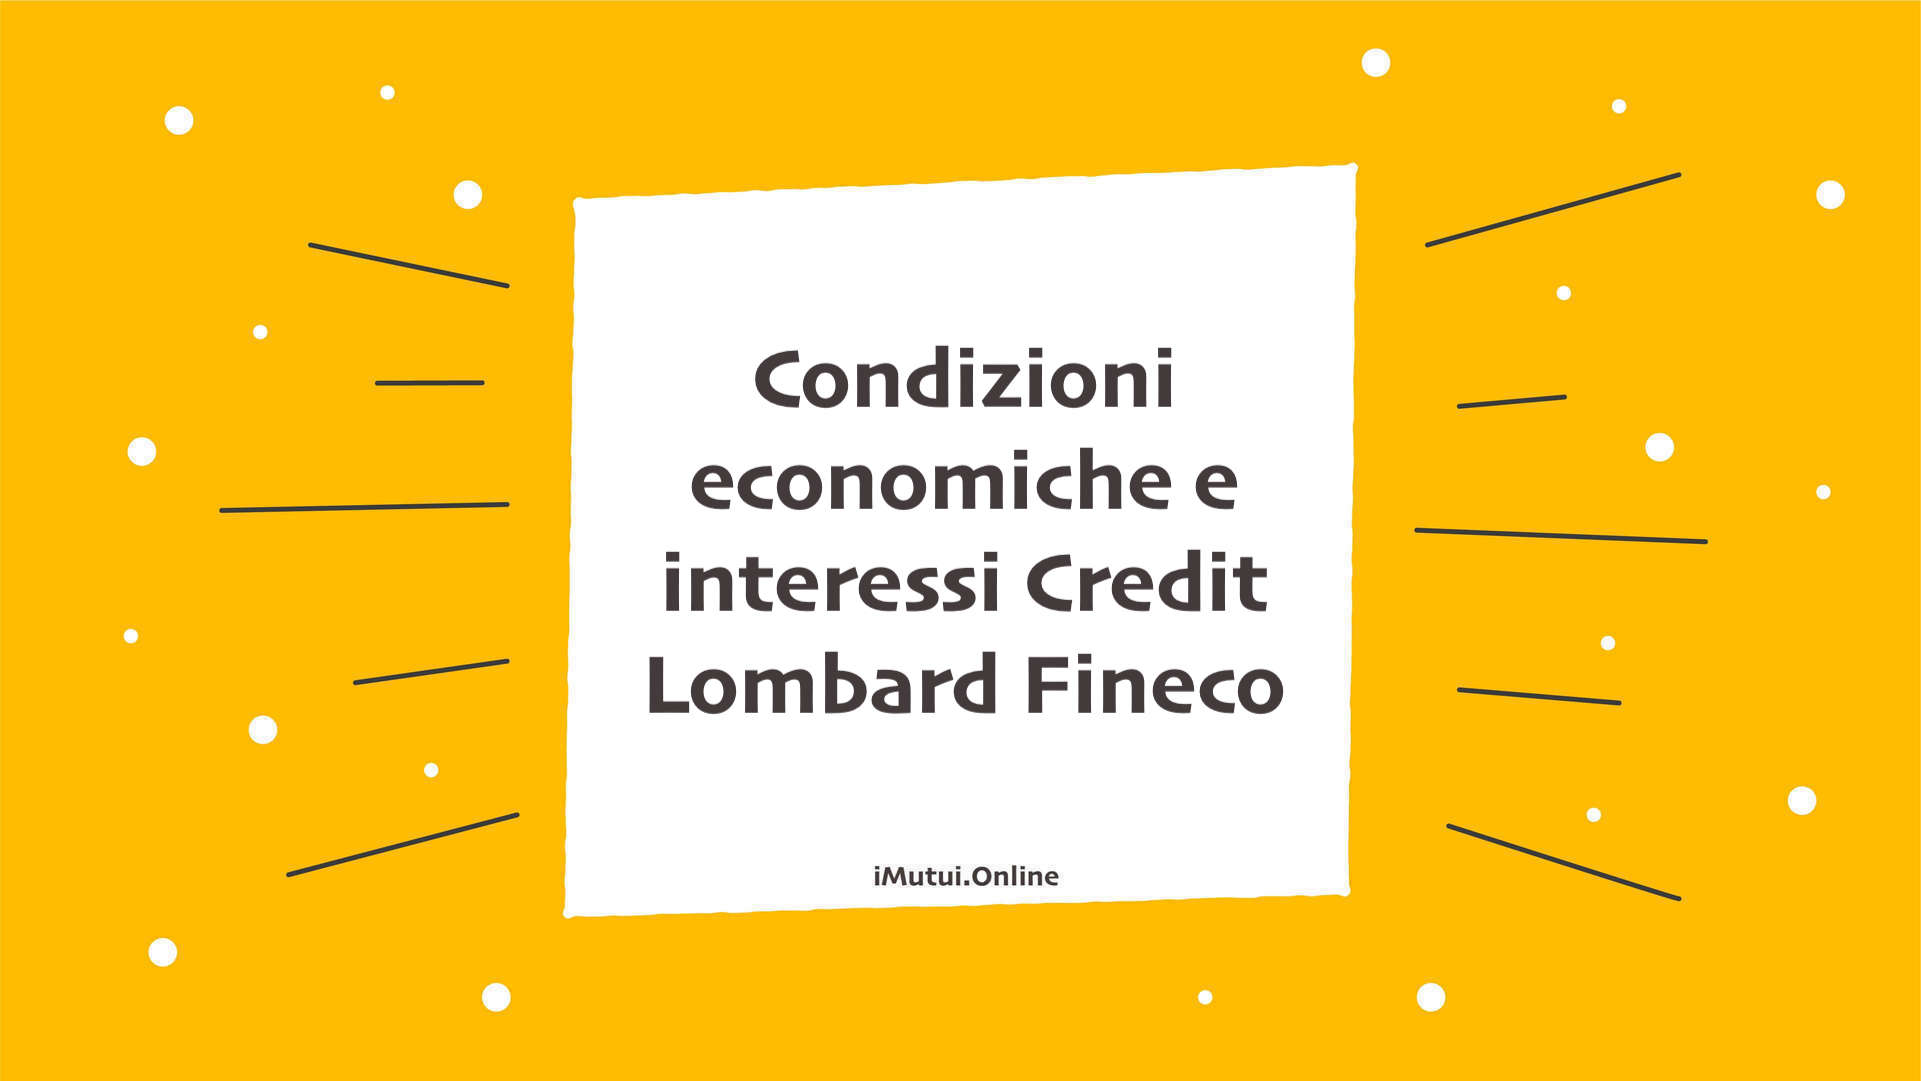 Condizioni economiche e interessi Credit Lombard Fineco